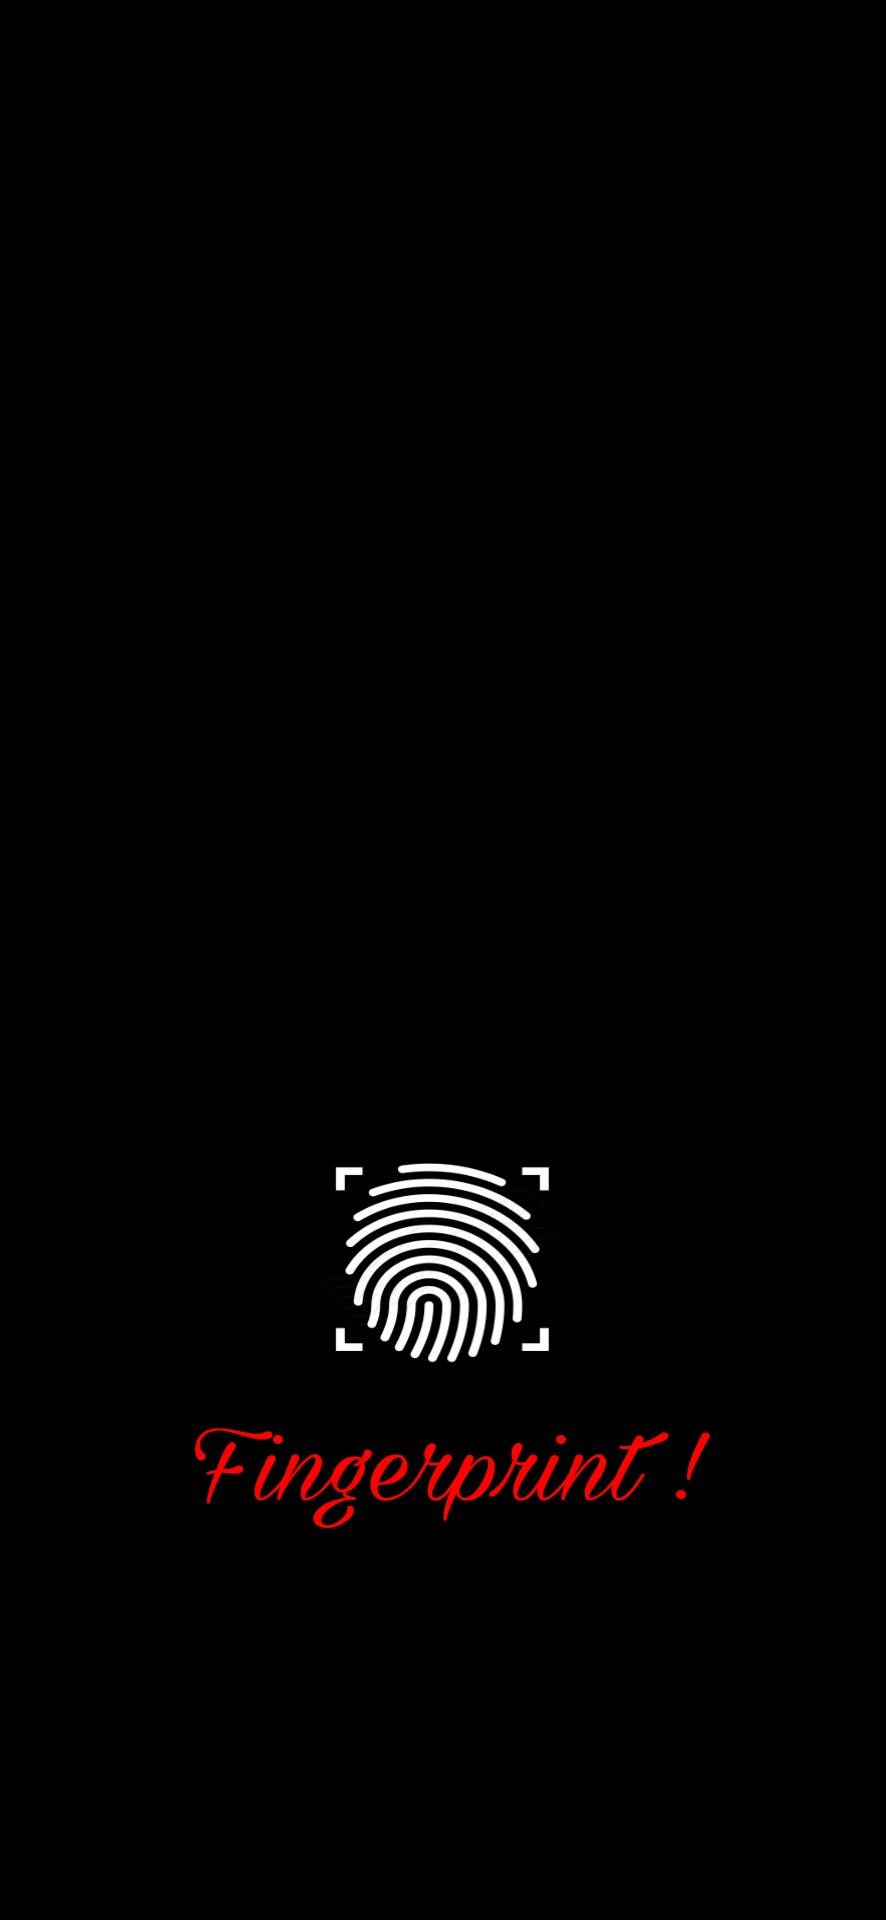 Display fingerprint Wallpapers Download  MobCup